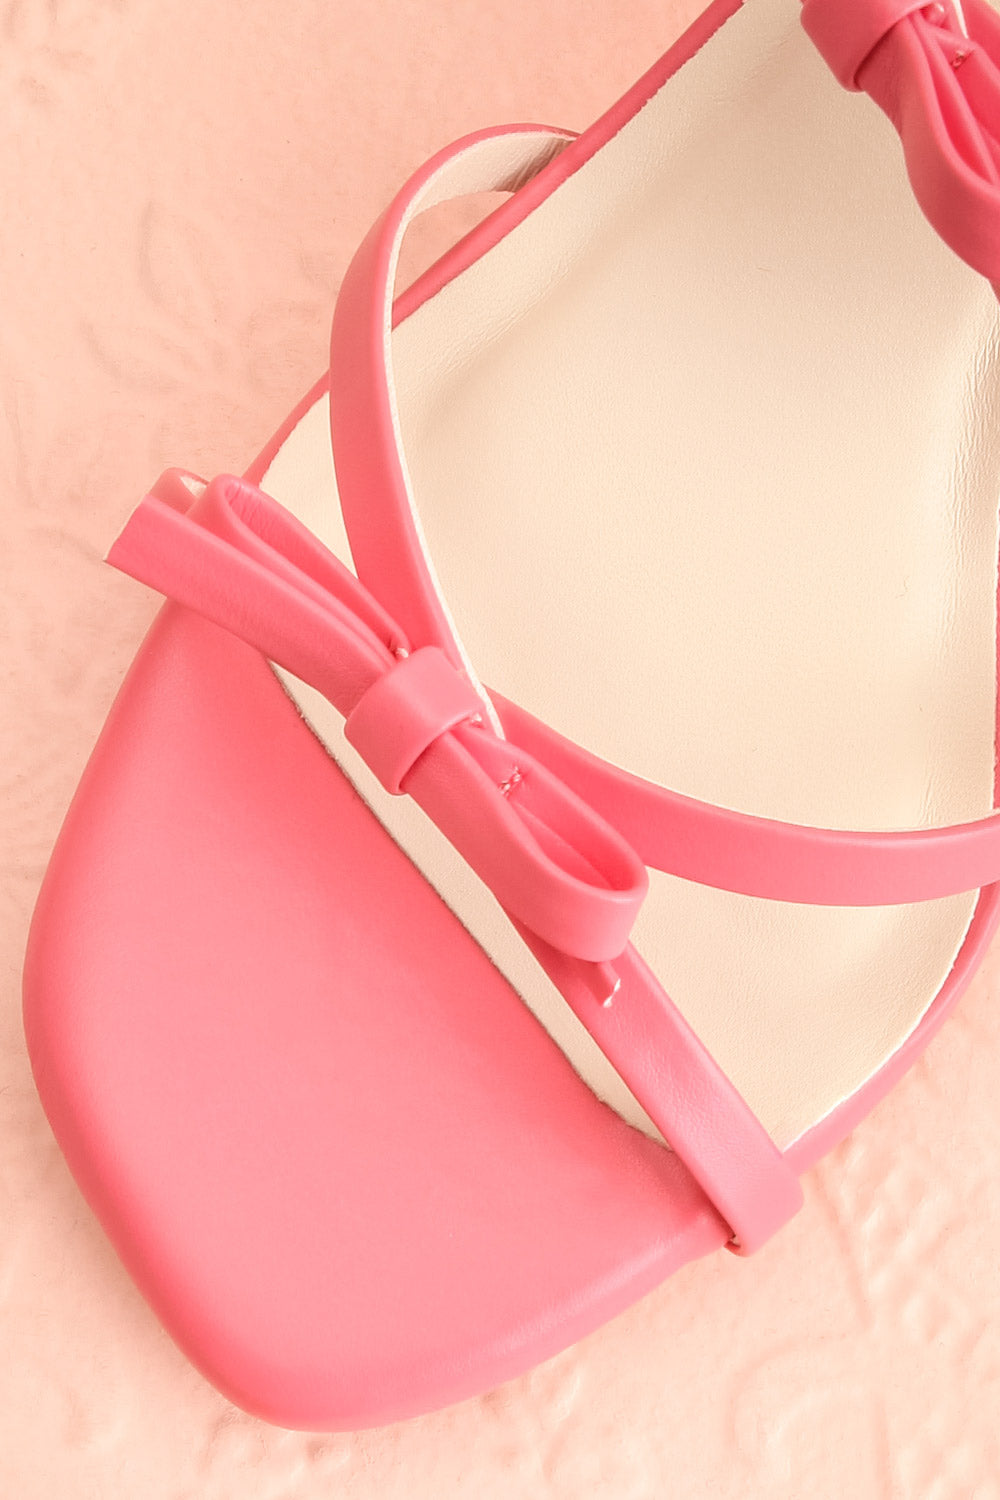 Macy Pink Heeled Sandals w/ Bows | Maison garçonne flat close-up